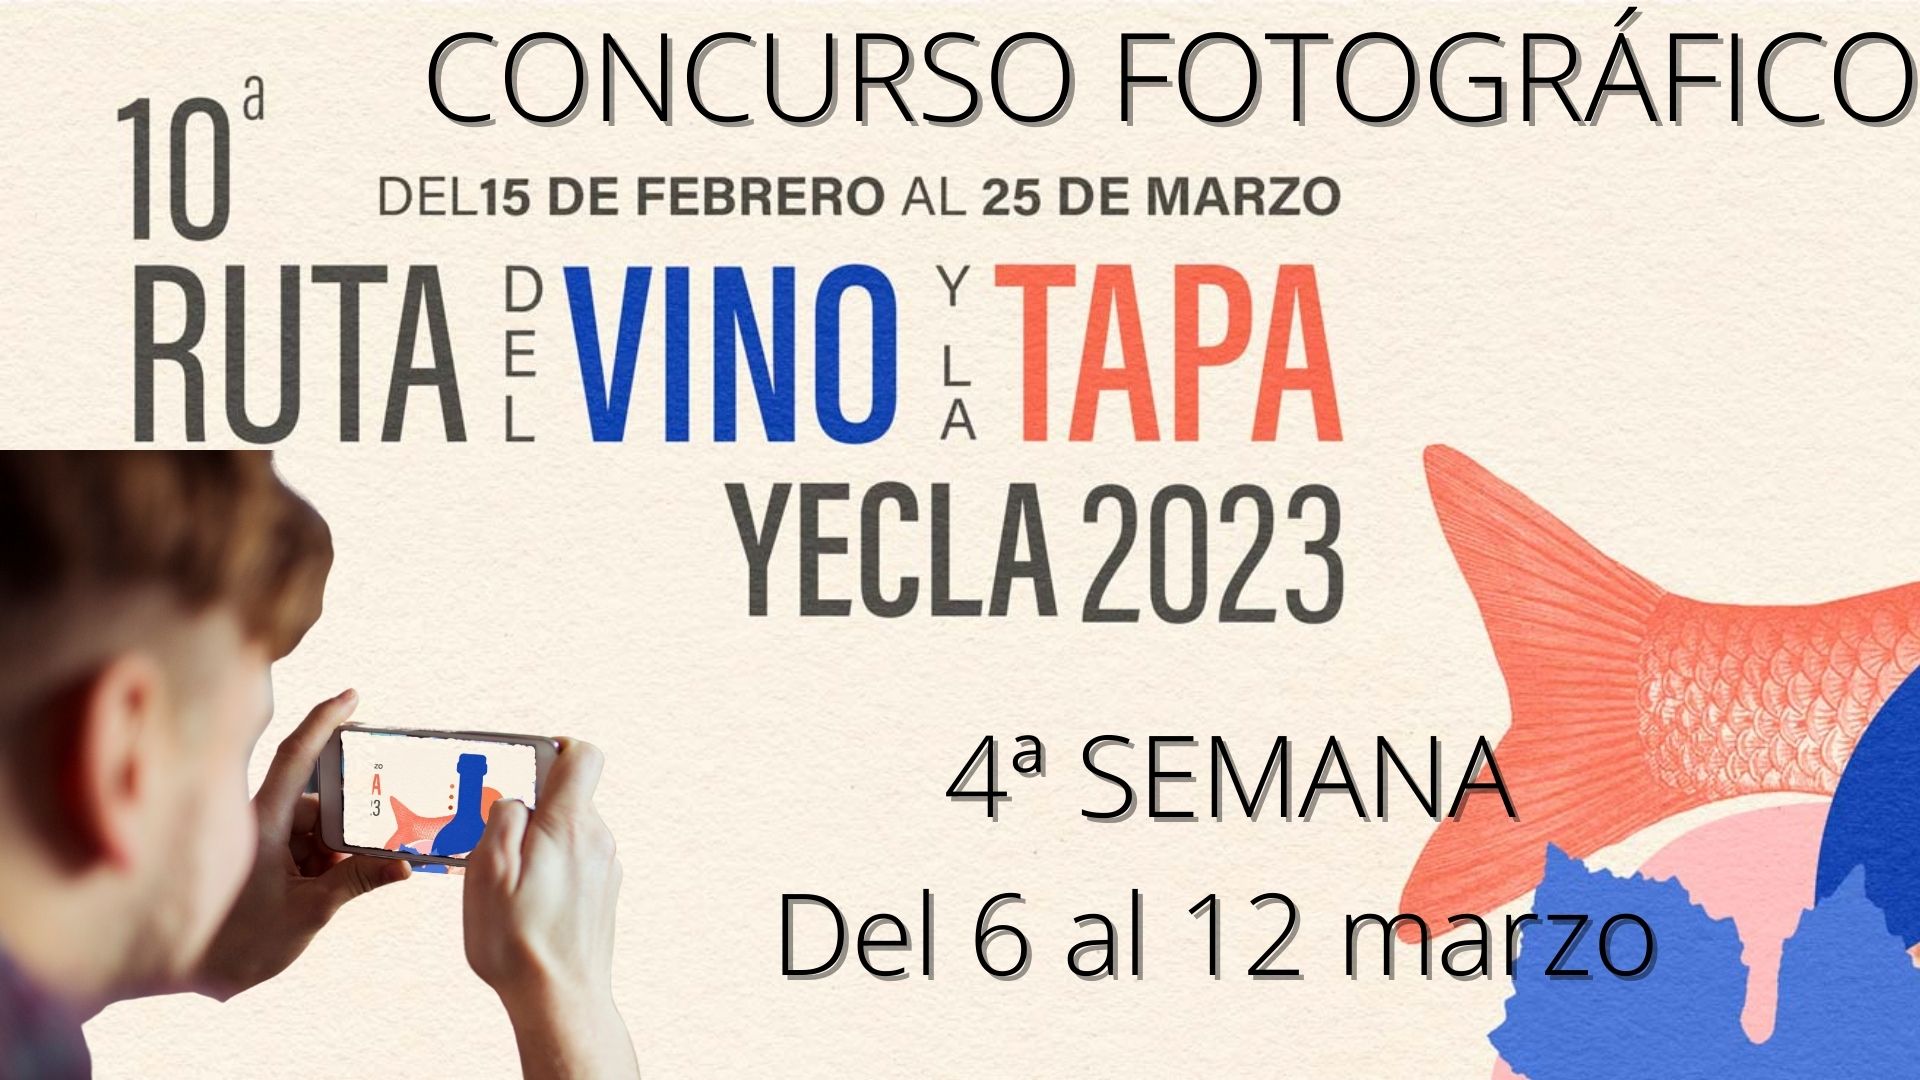 Participantes del concurso fotográfico 10 Ruta del vino de Yecla. 4ª Semana